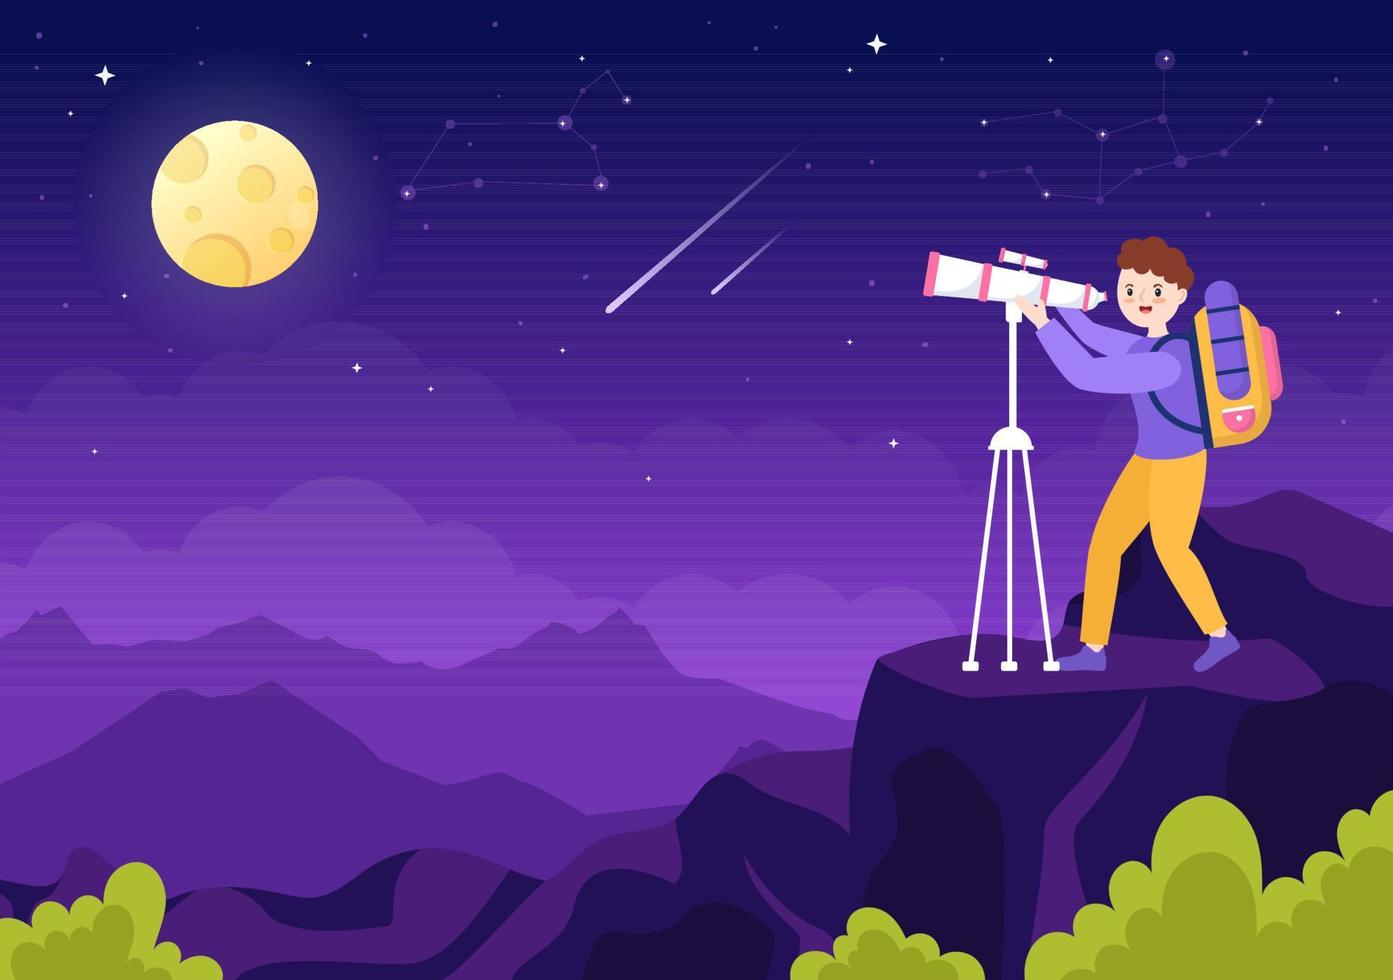 ilustração de desenhos animados de astronomia com pessoas assistindo céu estrelado à noite, galáxia e planetas no espaço sideral através do telescópio em estilo desenhado à mão plana vetor